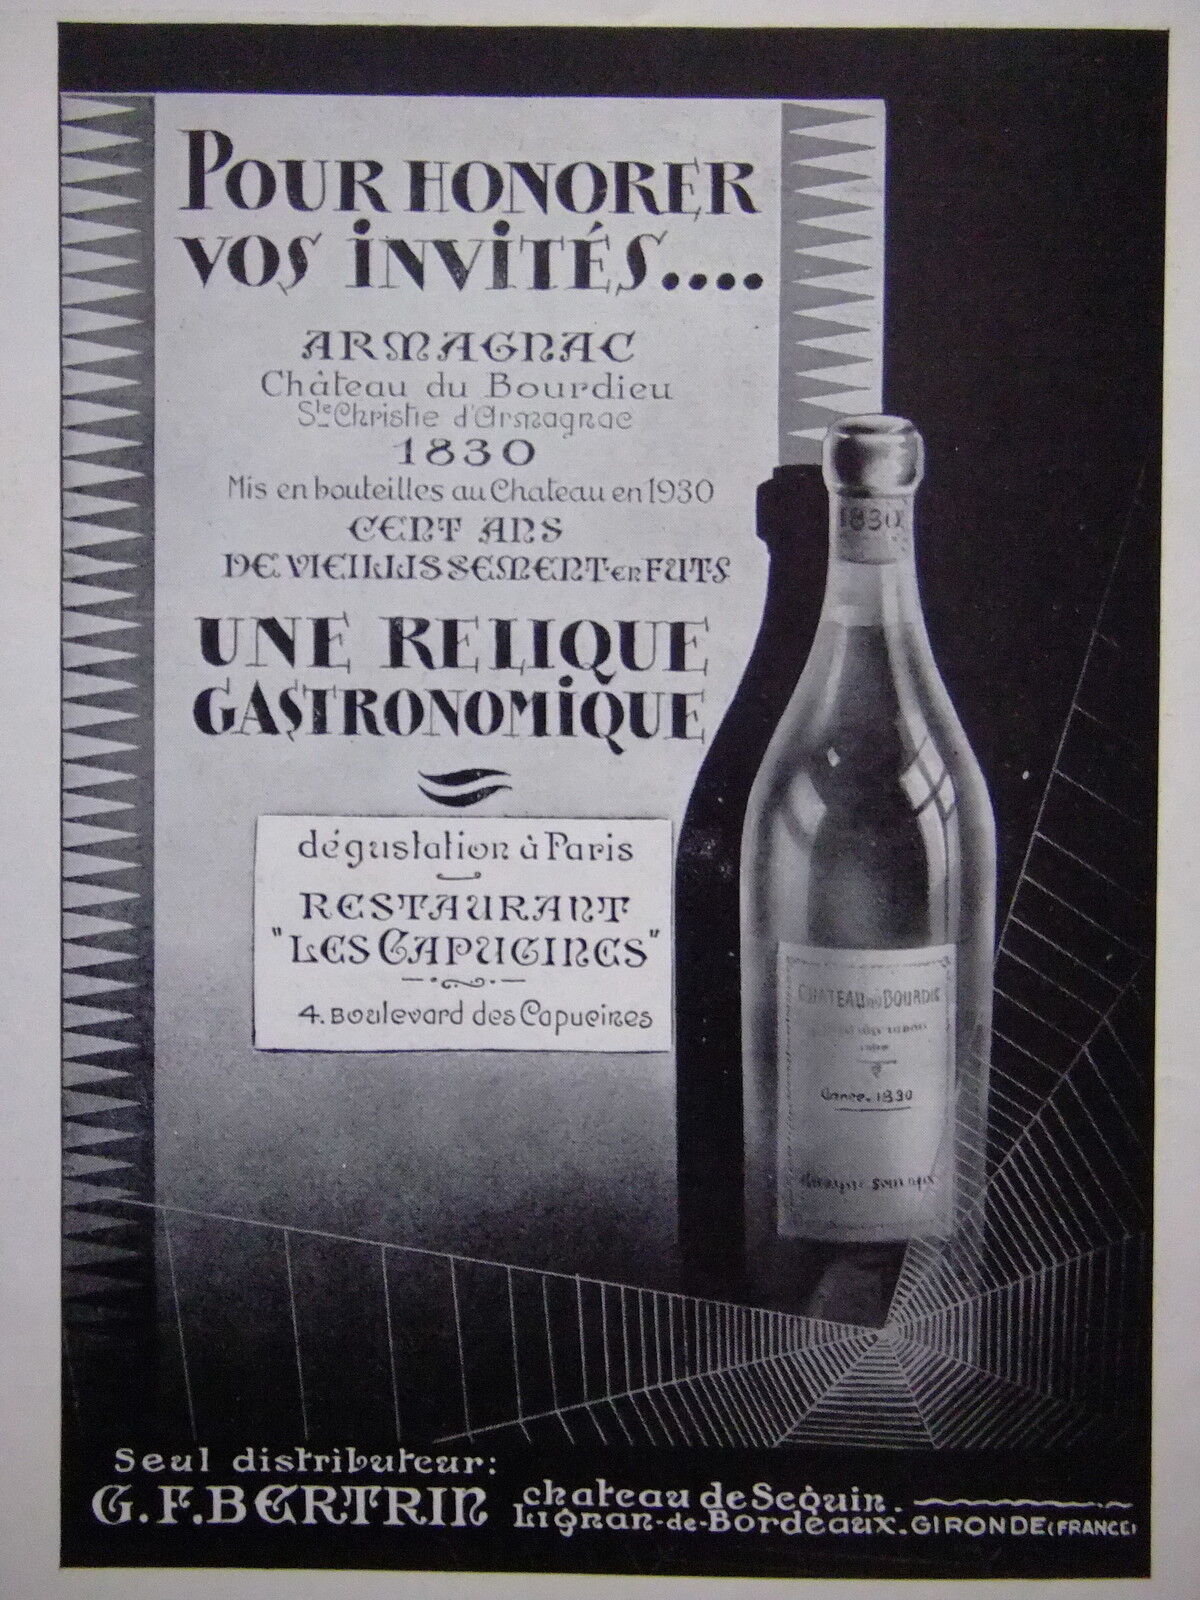 1932 PRESS ADVERTISEMENT ARMAGNAC CHÂTEAU DU BOURDIEU GASTRONOMIC RELIC